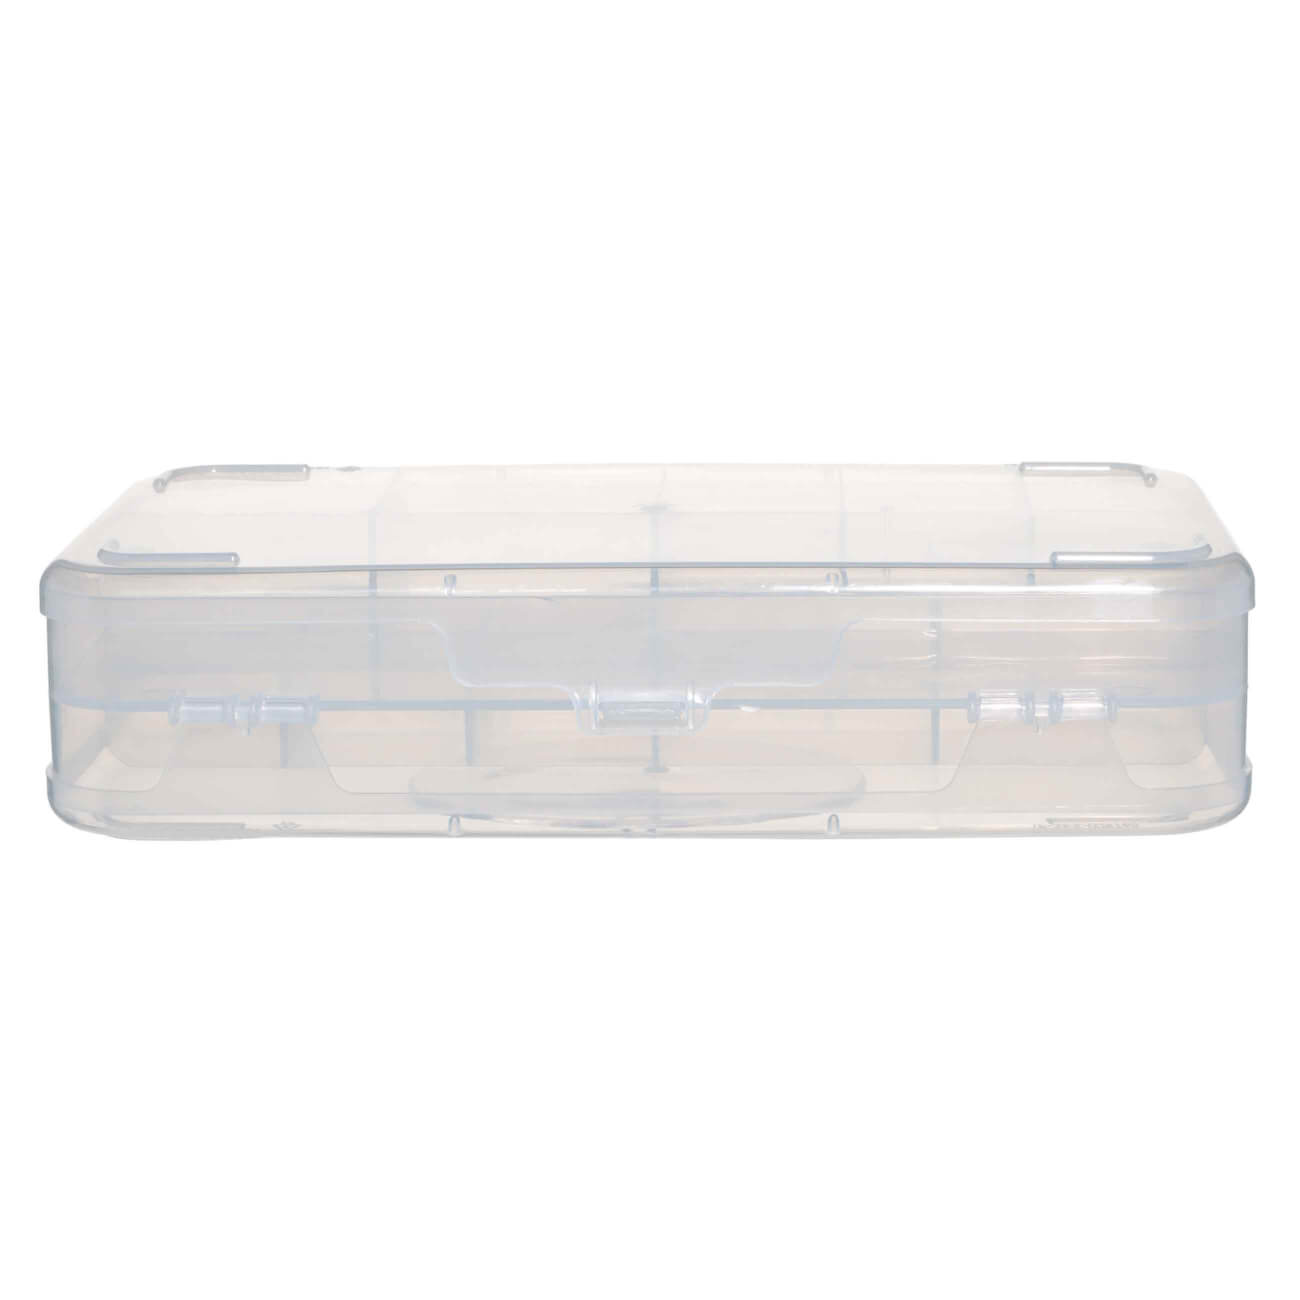 Контейнер-органайзер для хранения, 21х13 см, 2 уровня, пластик, Compact контейнер пластиковый для хранения продуктов 30×12×5 5 см прозрачный